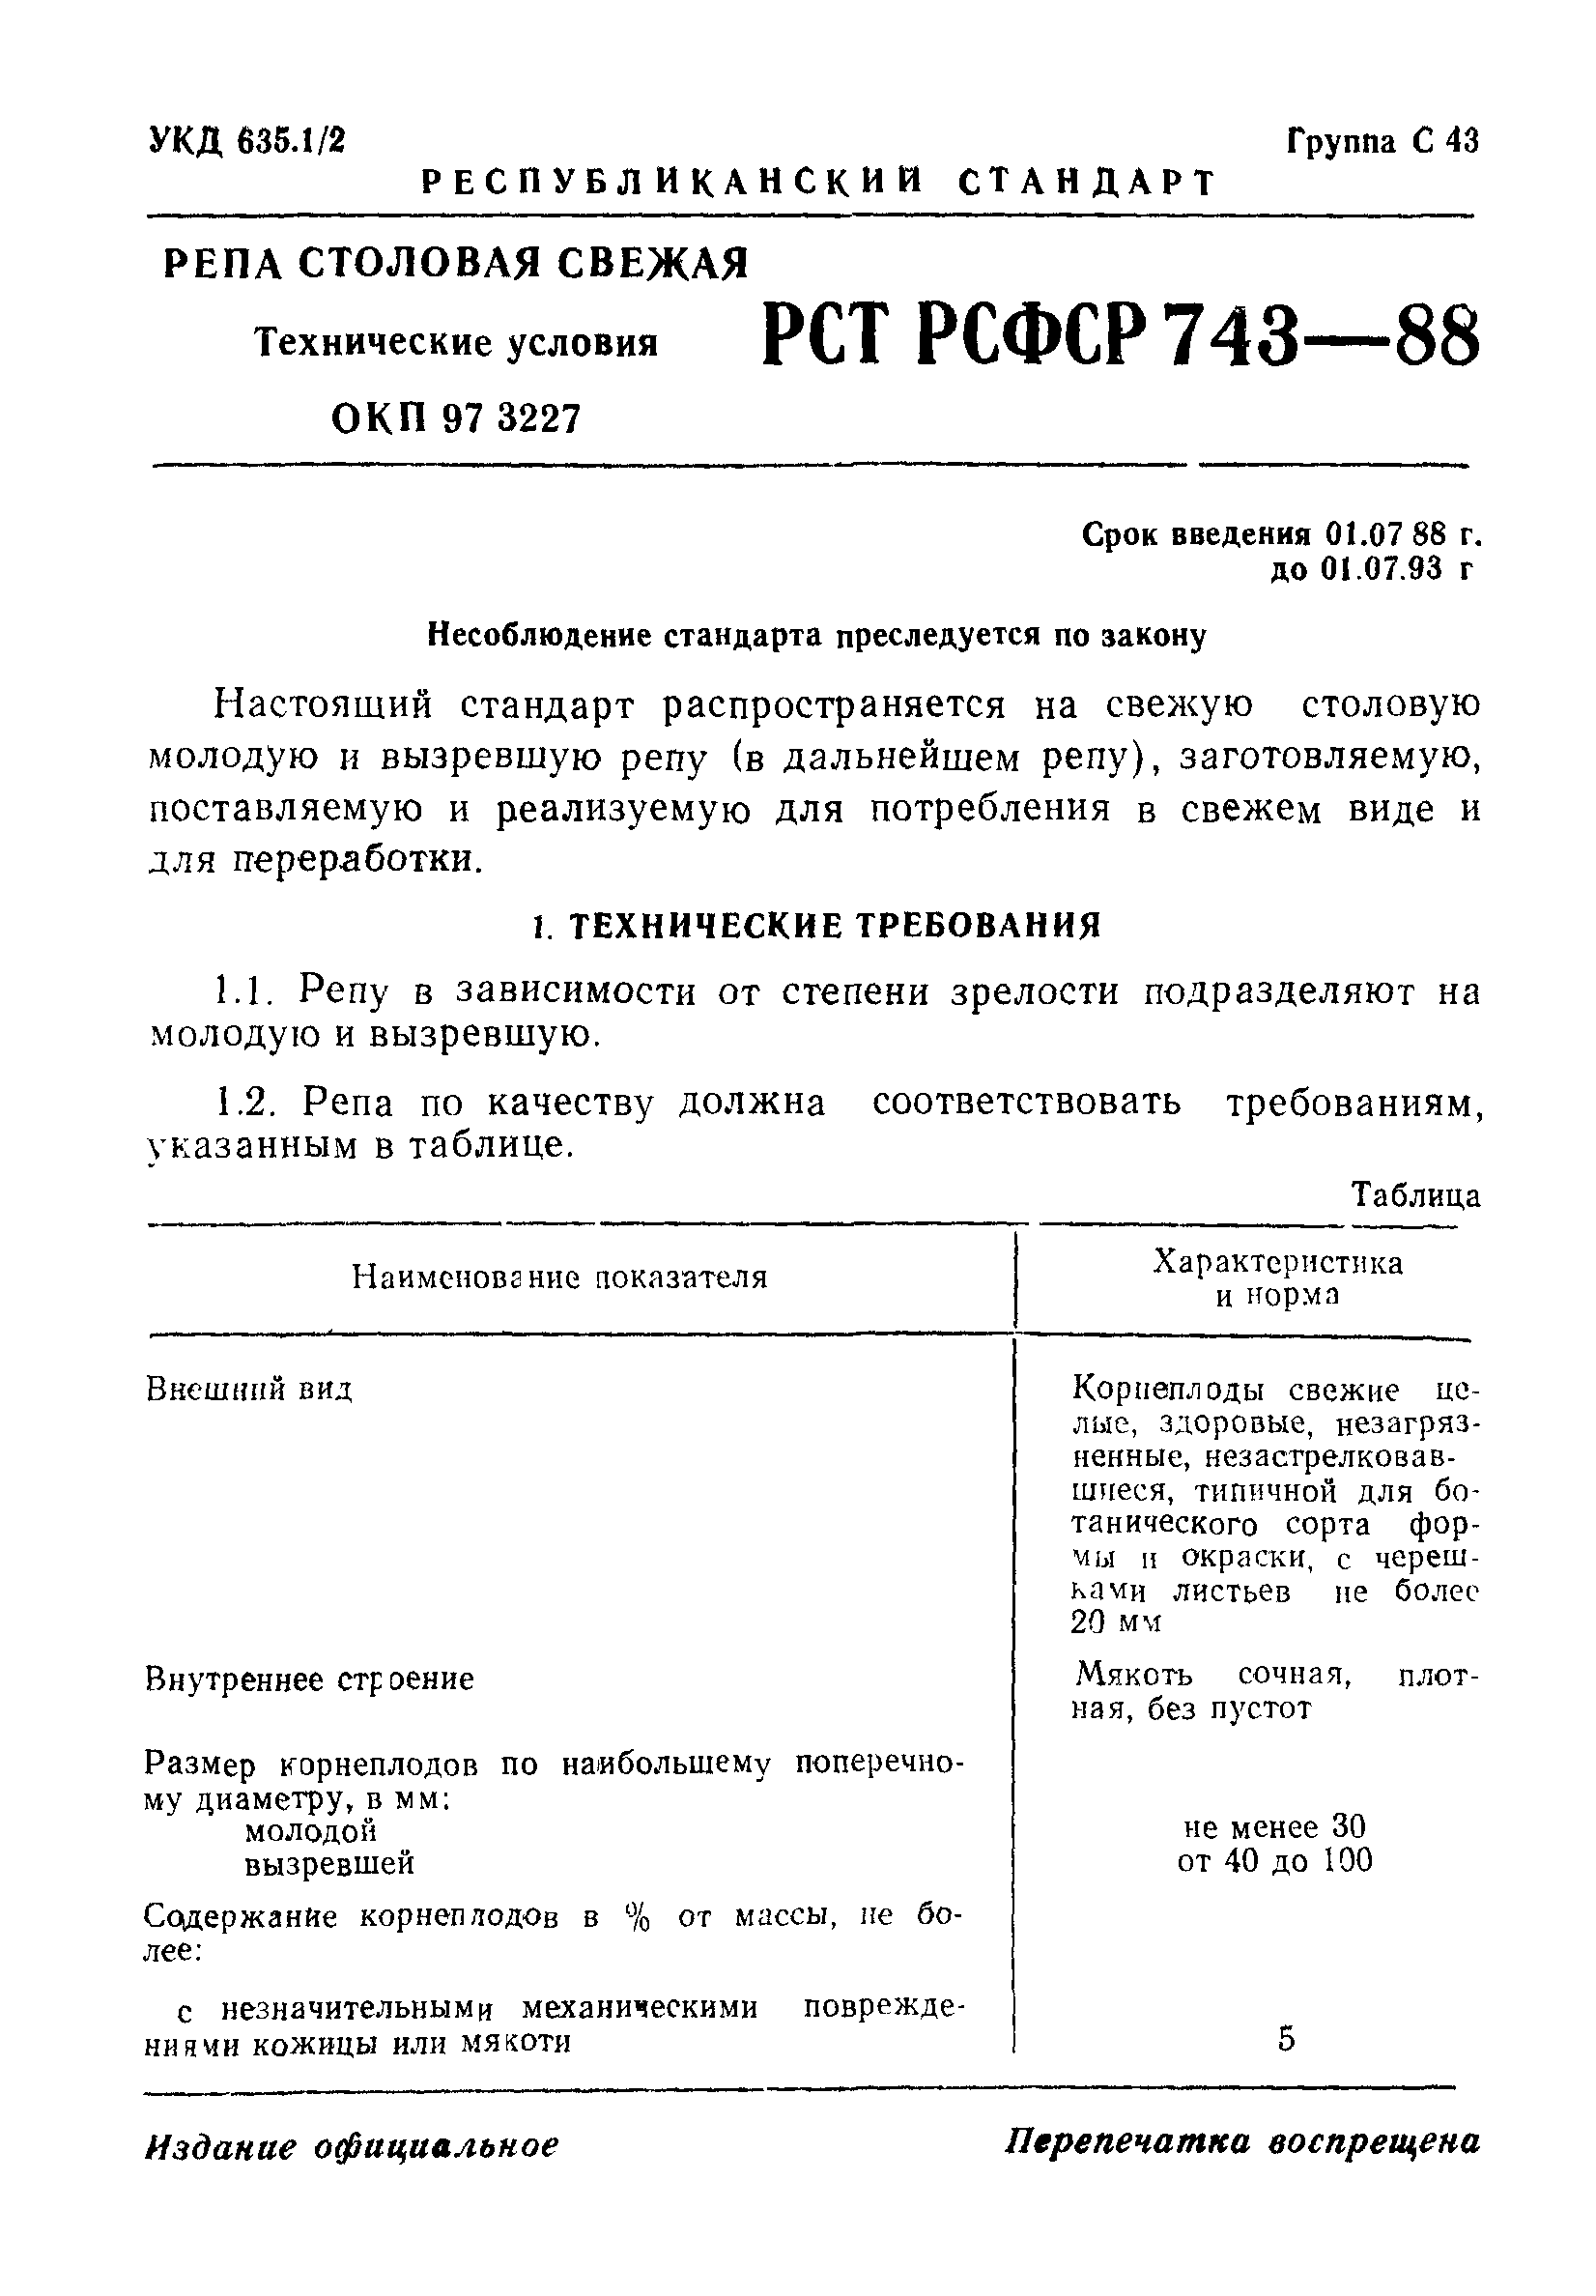 РСТ РСФСР 743-88